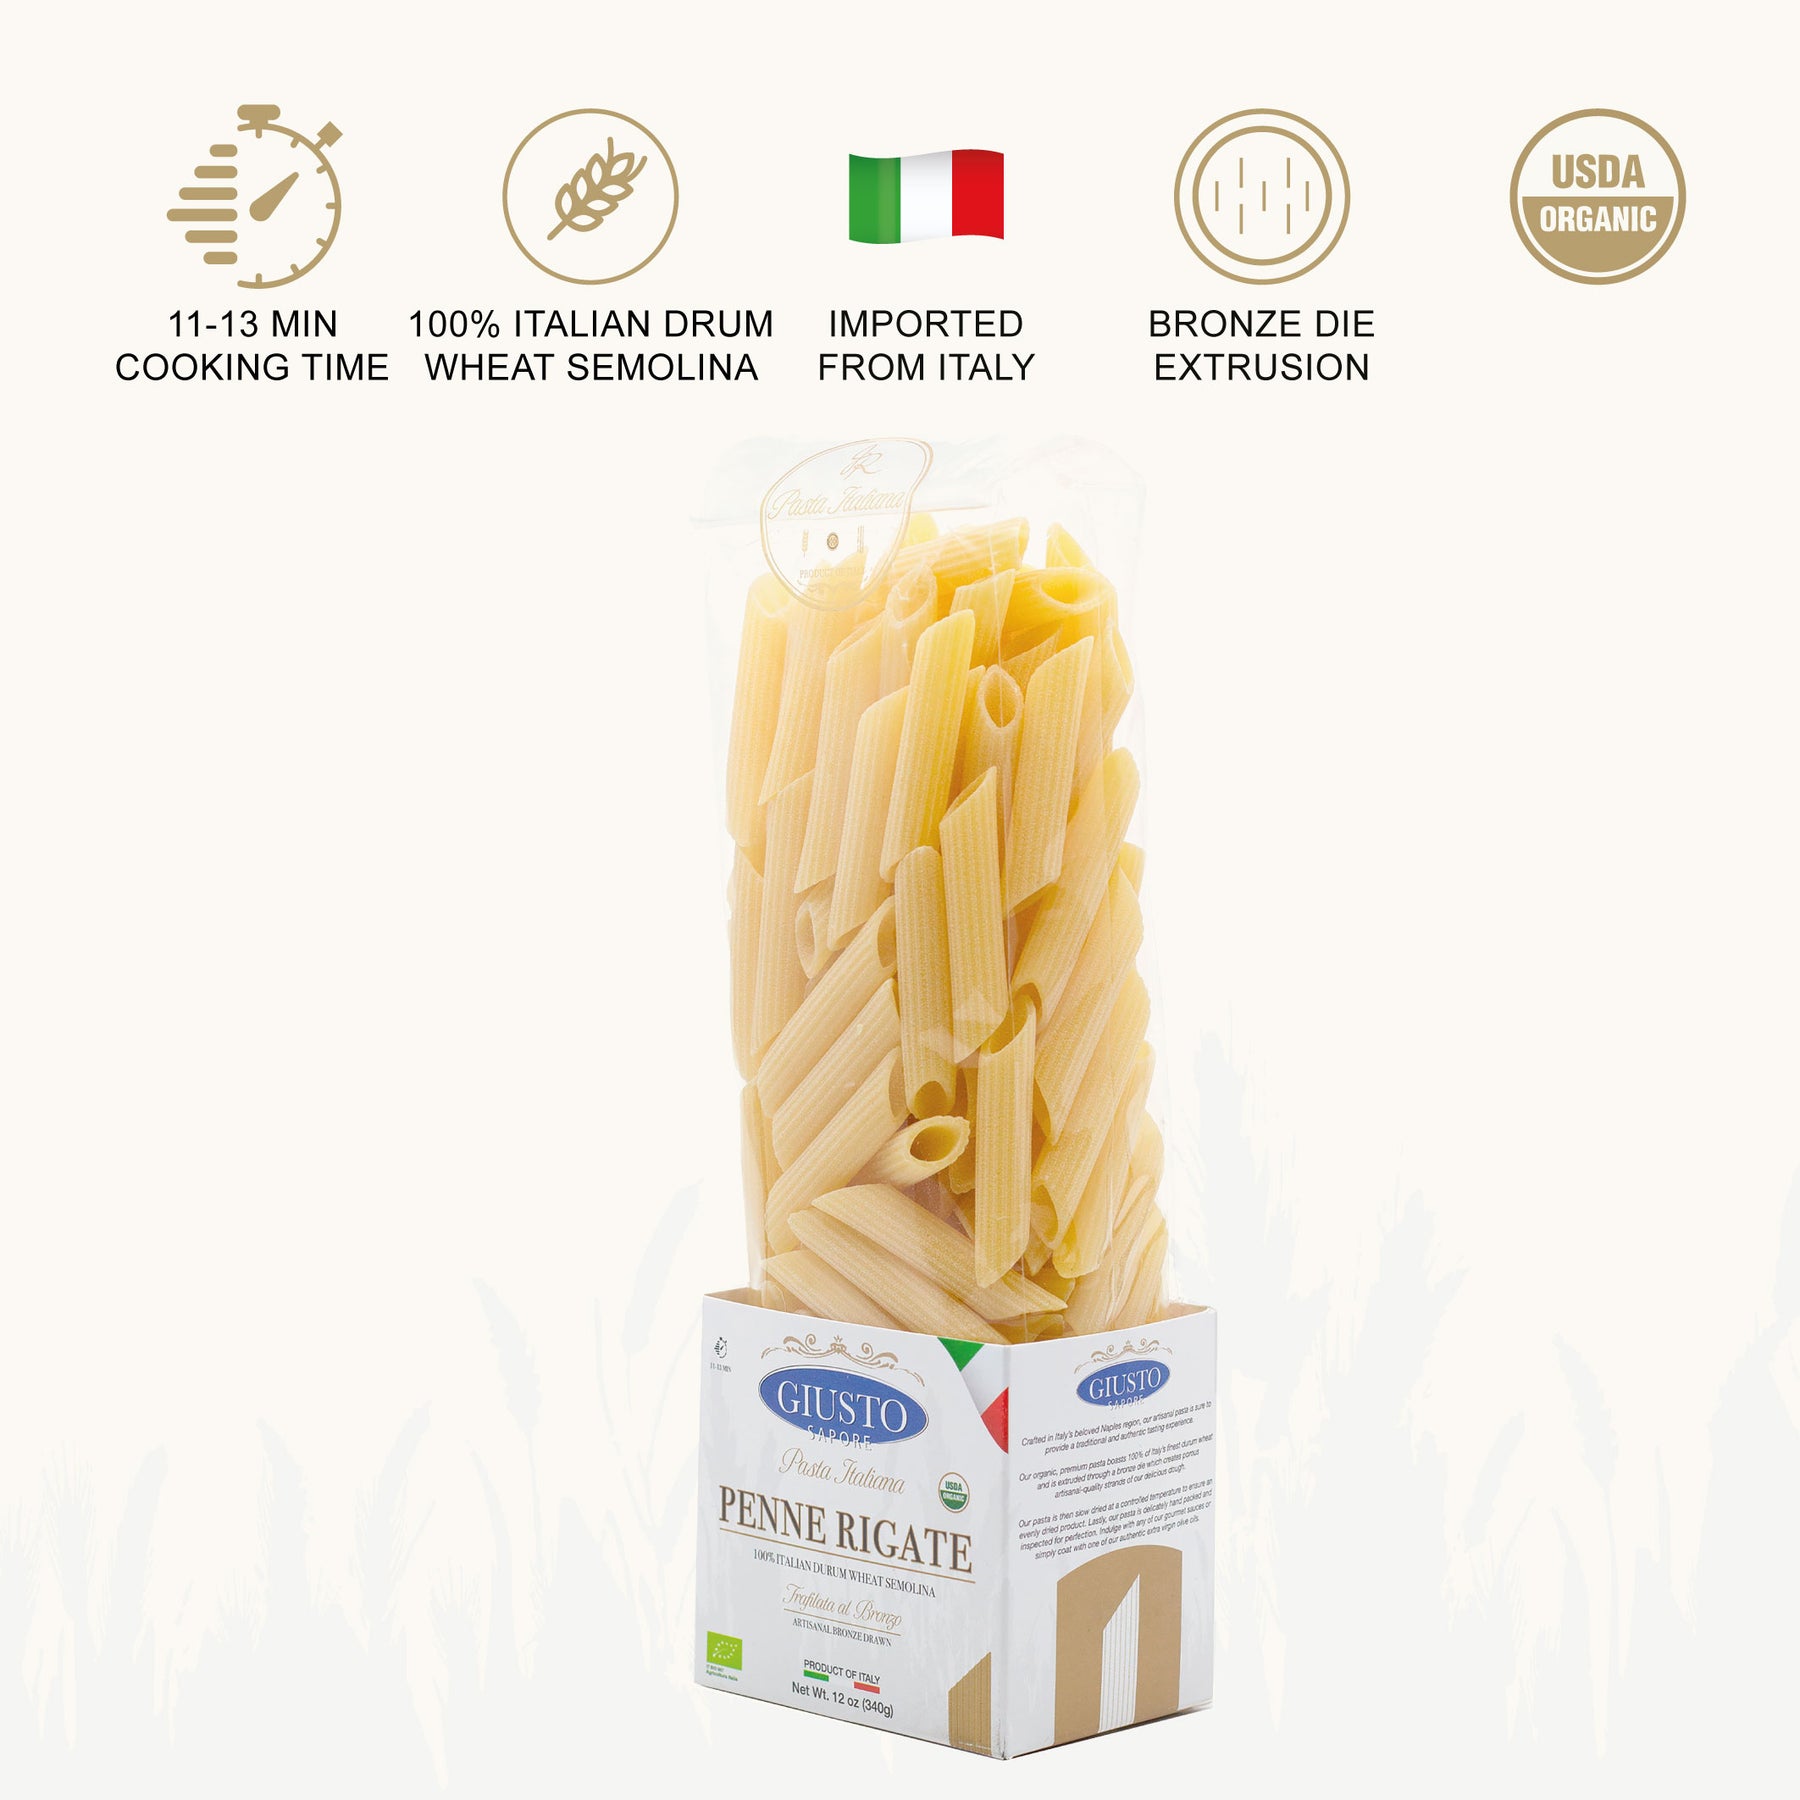 Penne Rigate - Italian durum wheat pasta